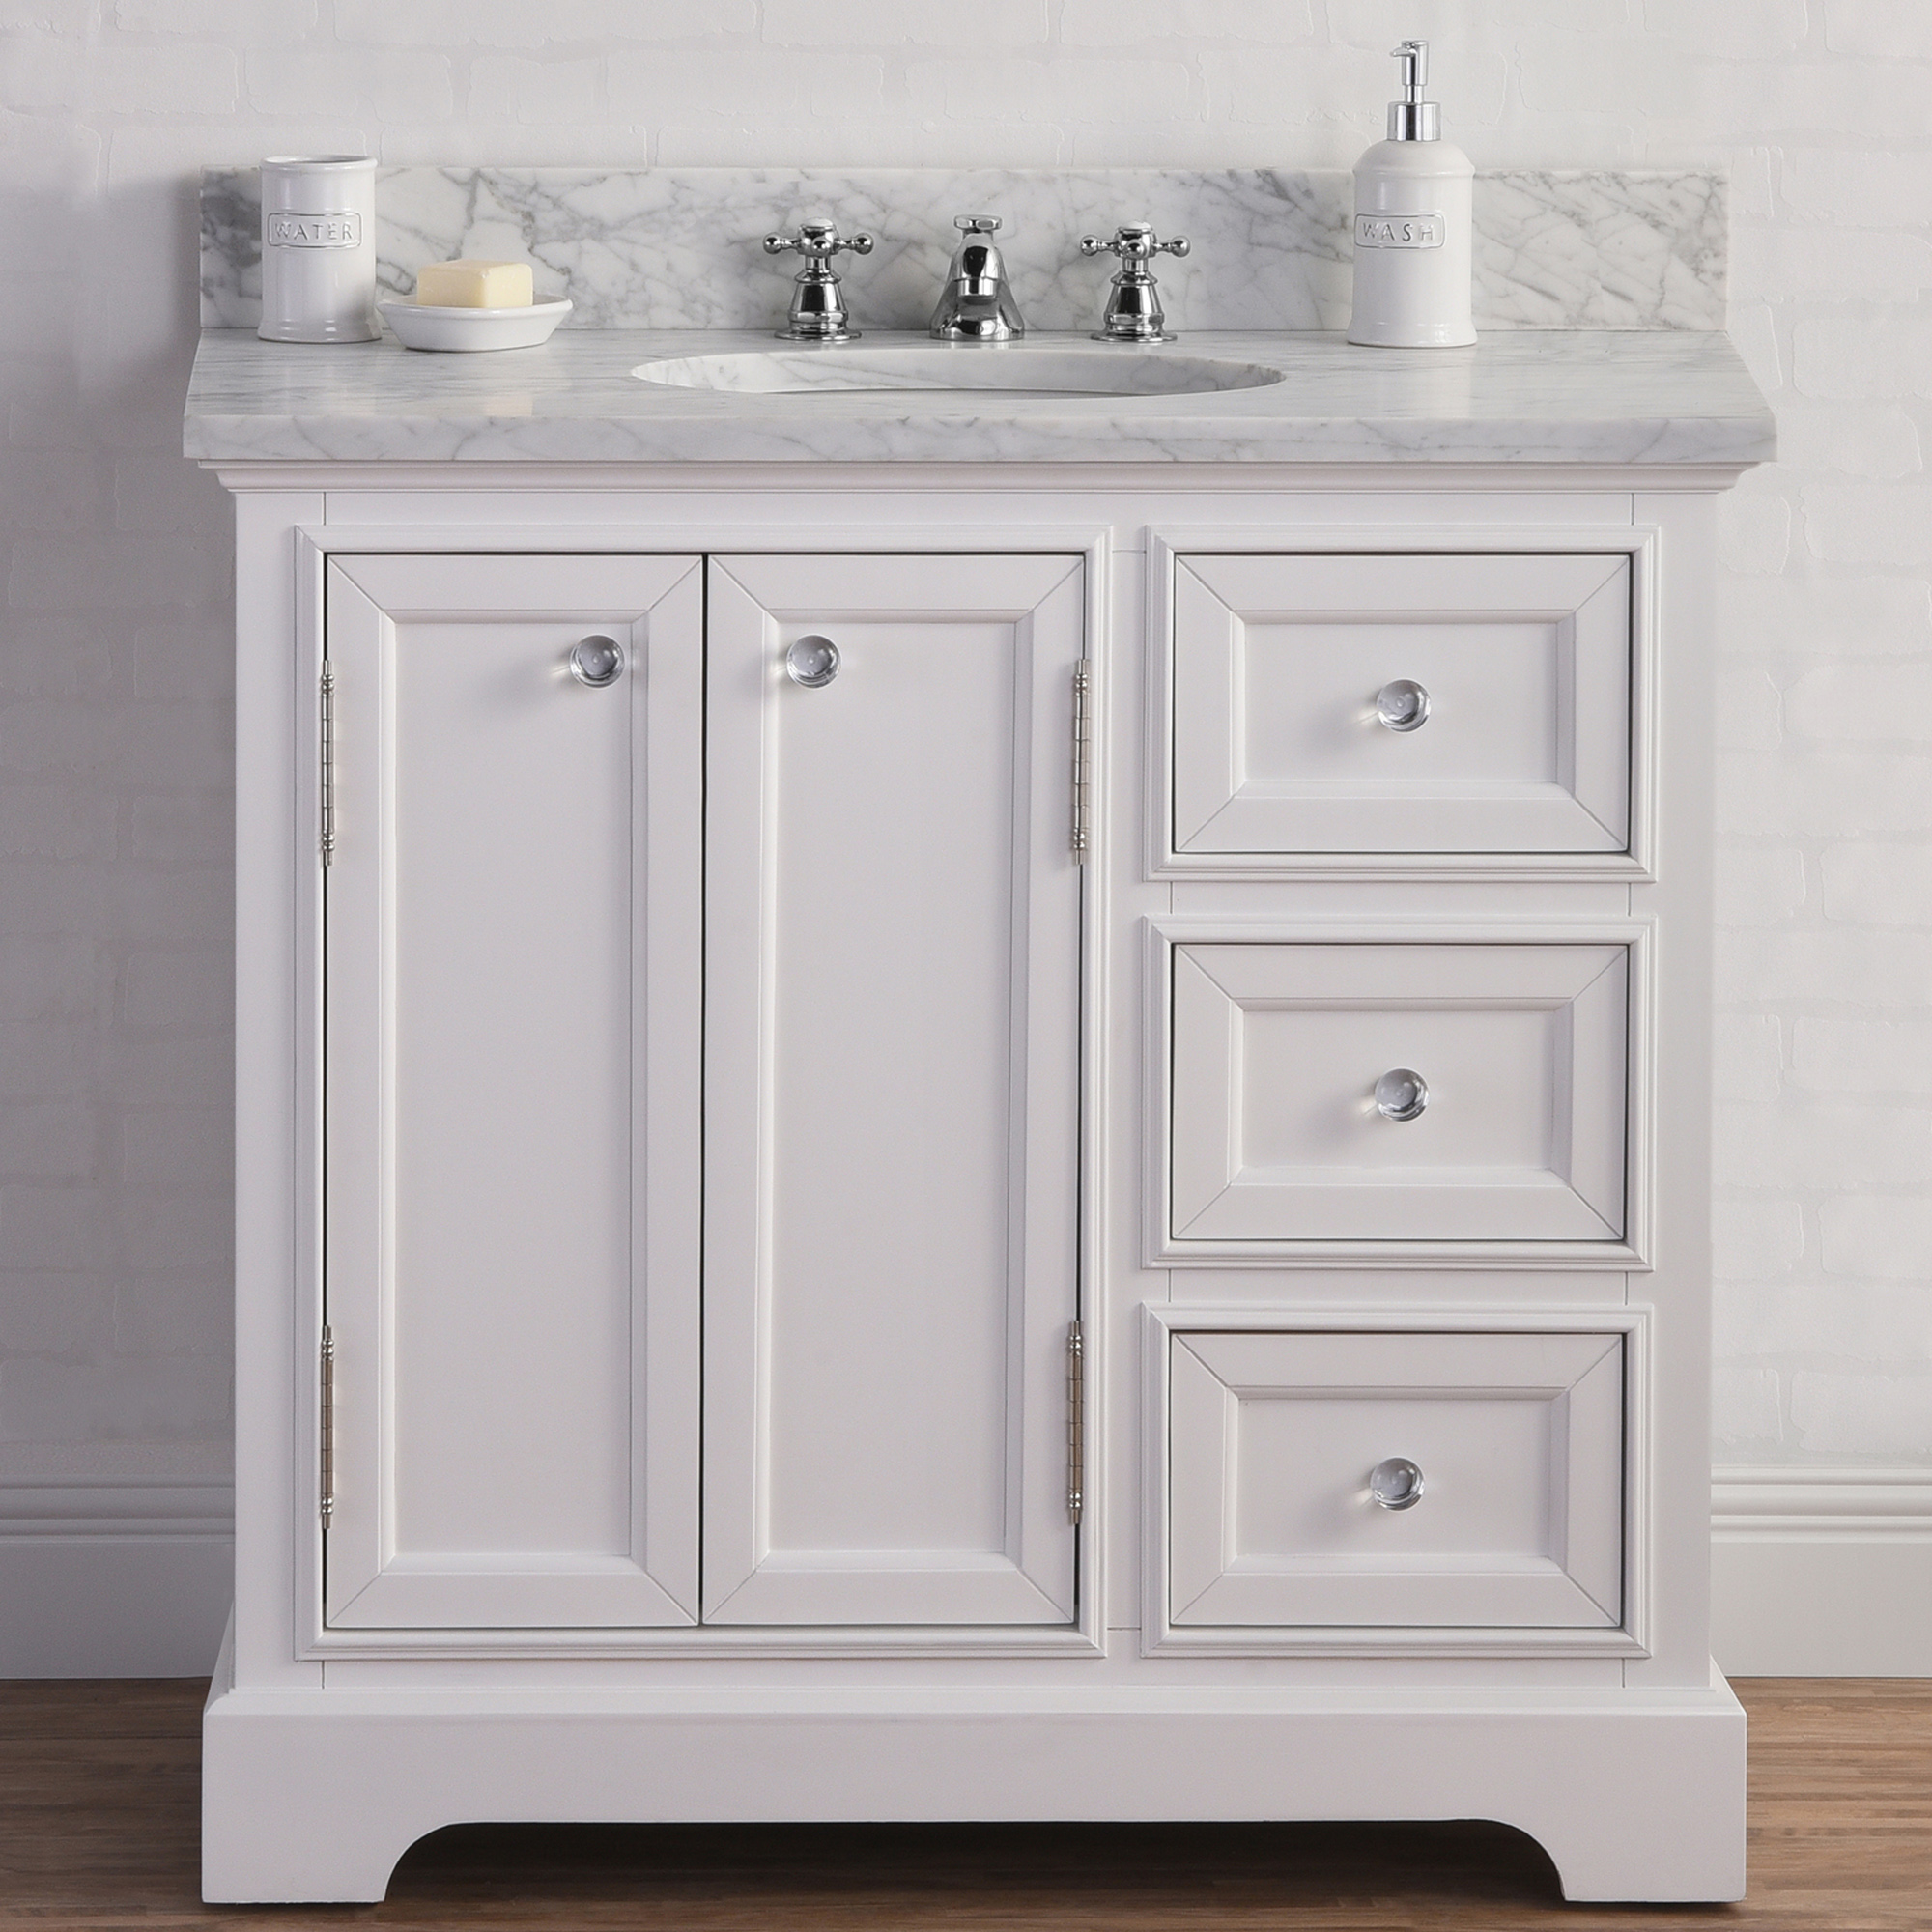 36" Wide Pure White Single Sink Carrara Marble Bathroom Vanity